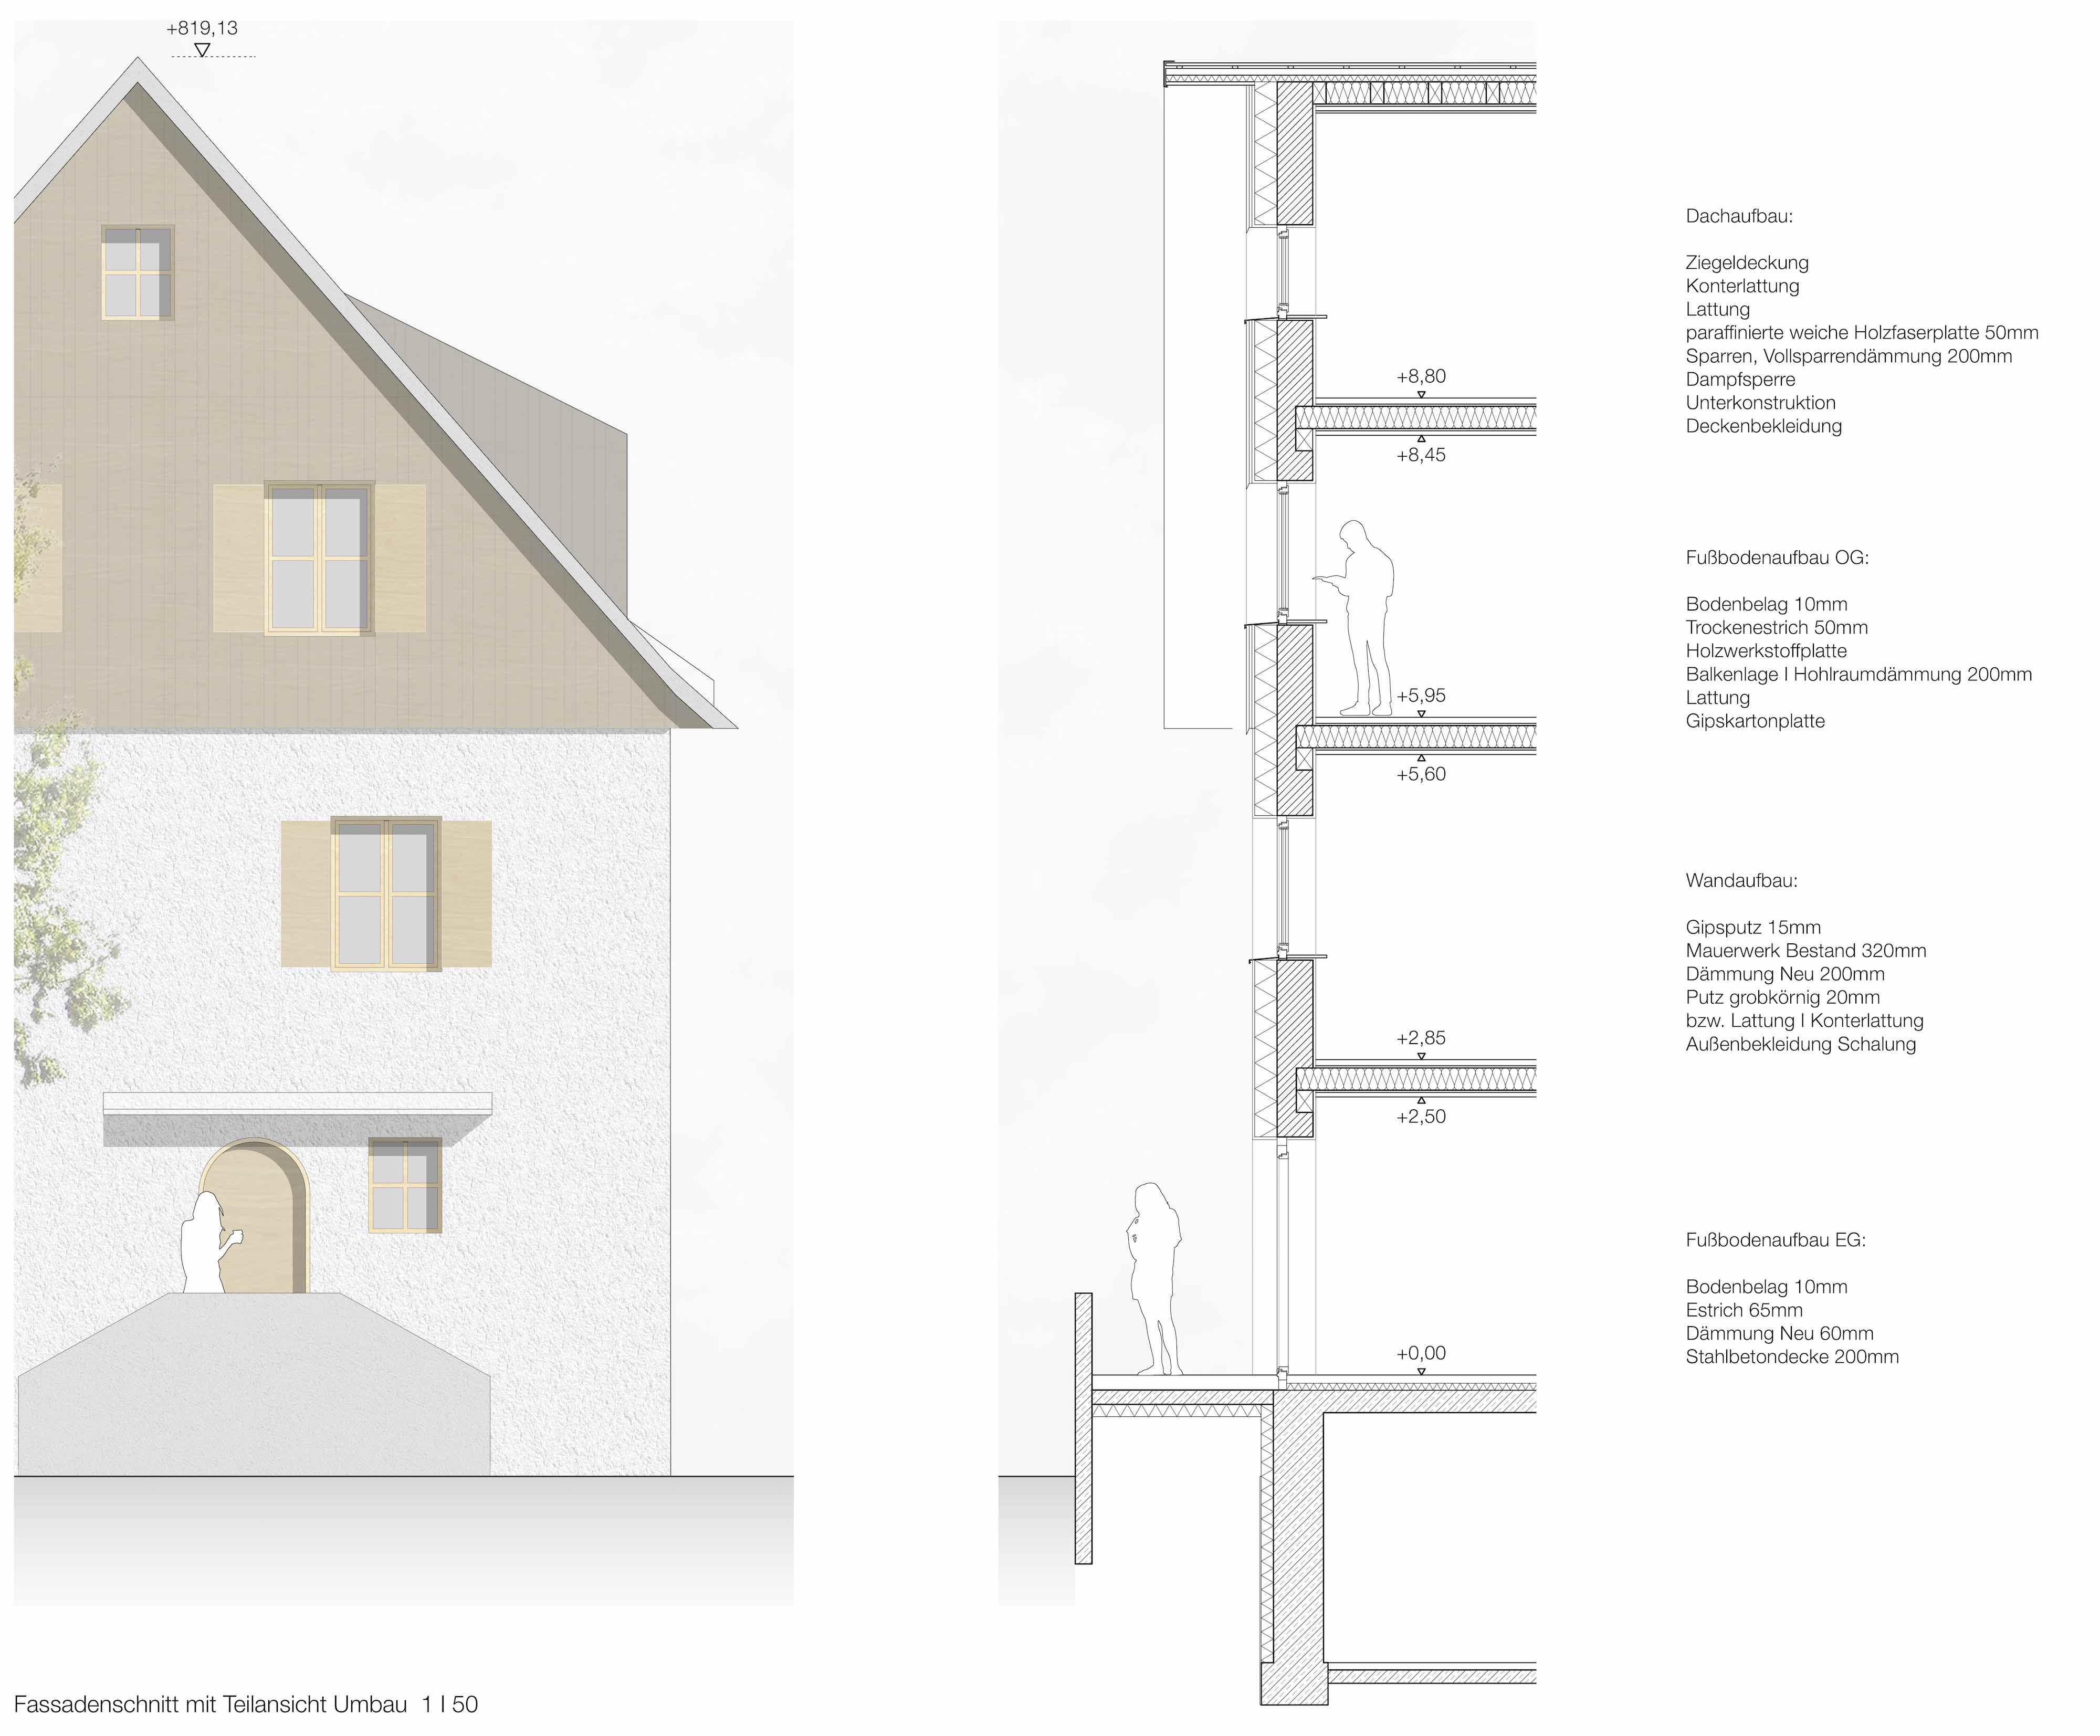 Bild zum Projekt Wettbewerb Wohnungsbau "Ziegelwies" Füssen